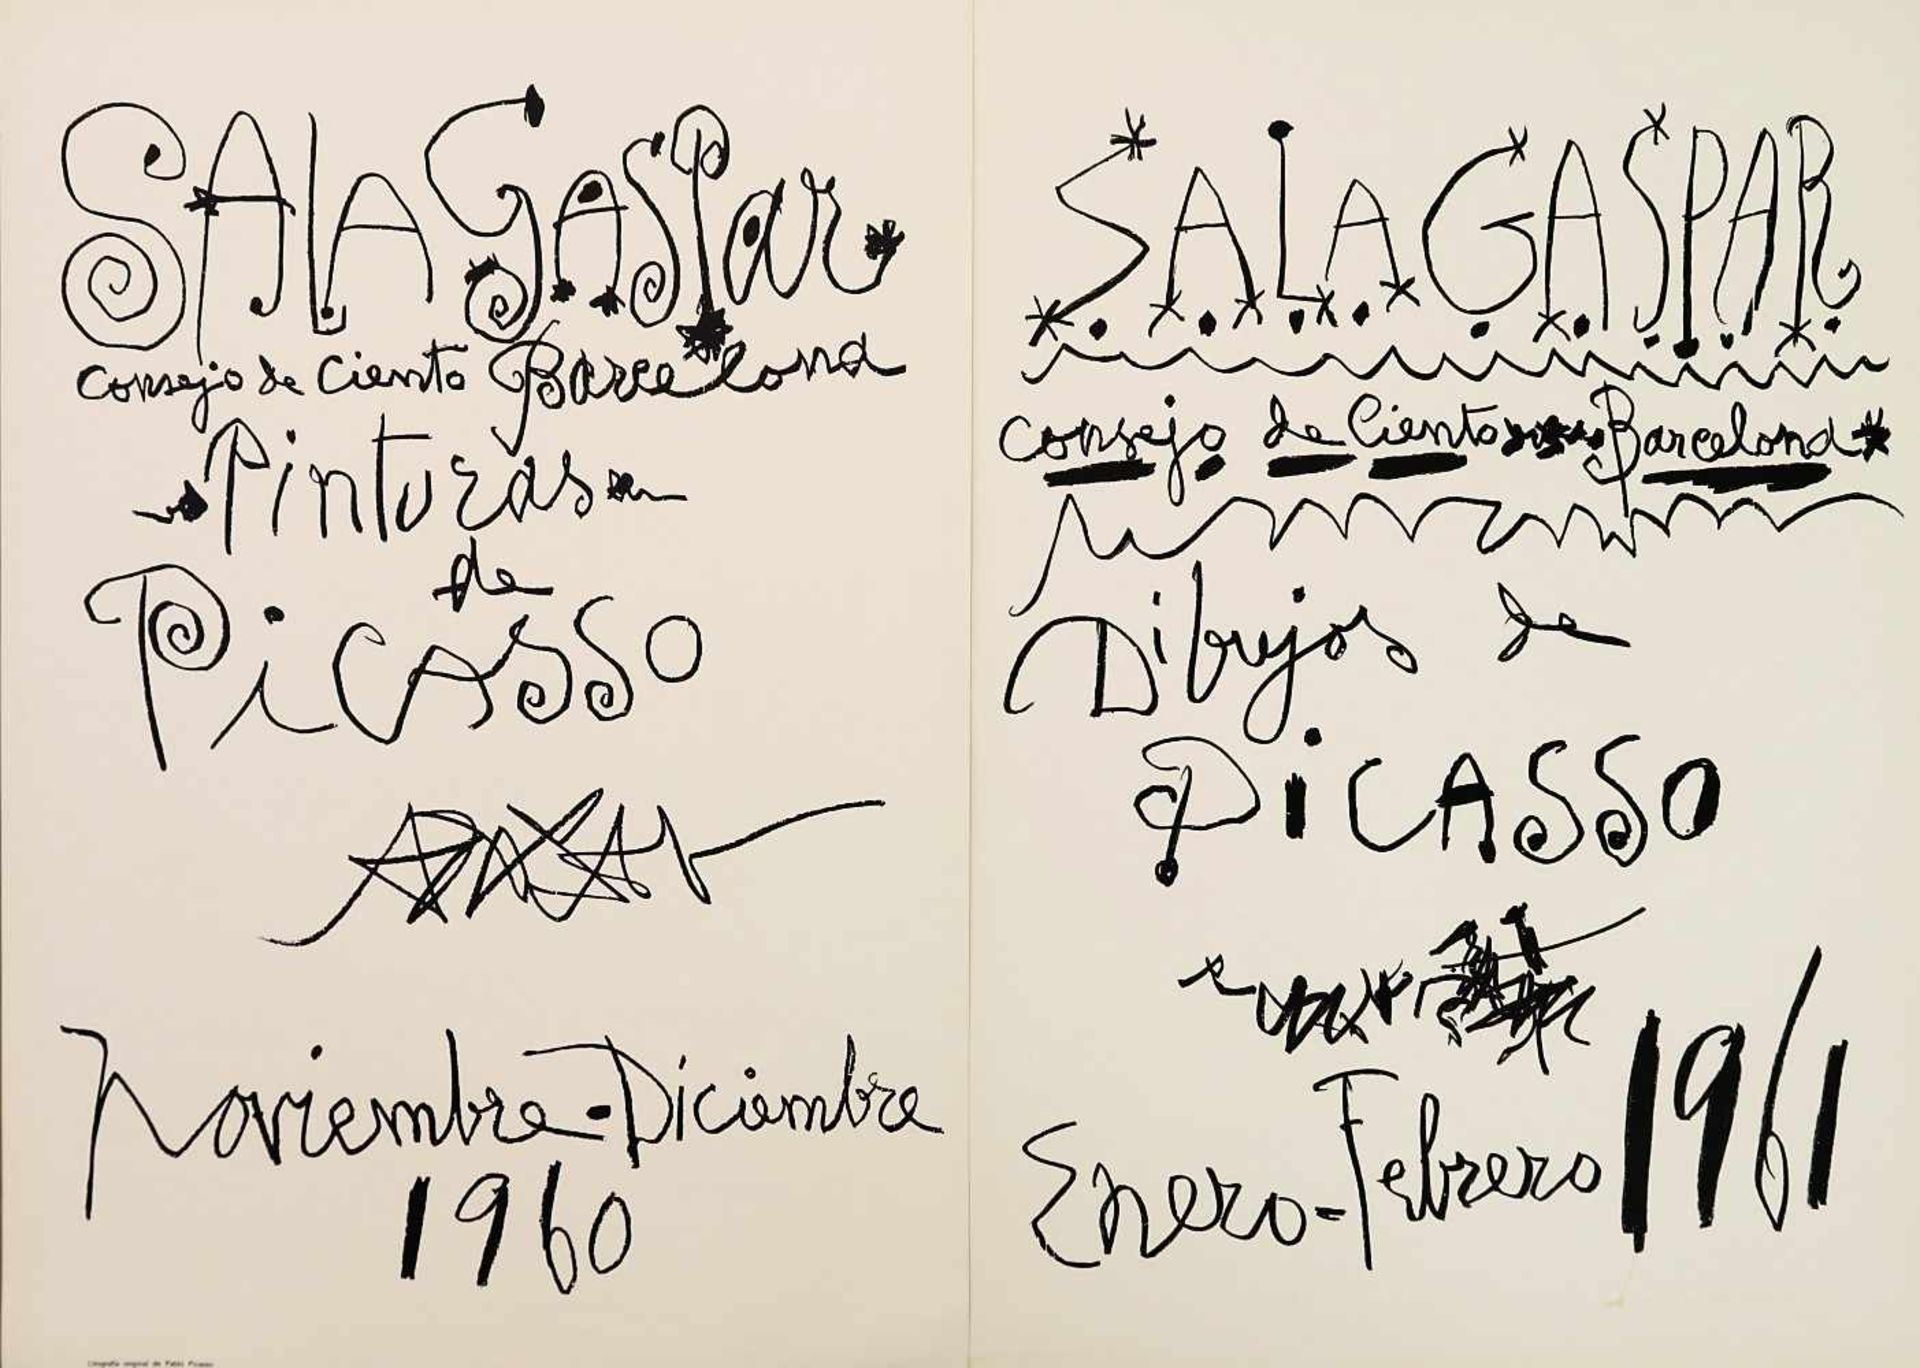 Picasso, Pablo1881 Málaga - 1973 MouginsSala Gaspar 1960/1961Vier Ausstellungspl - Bild 3 aus 3